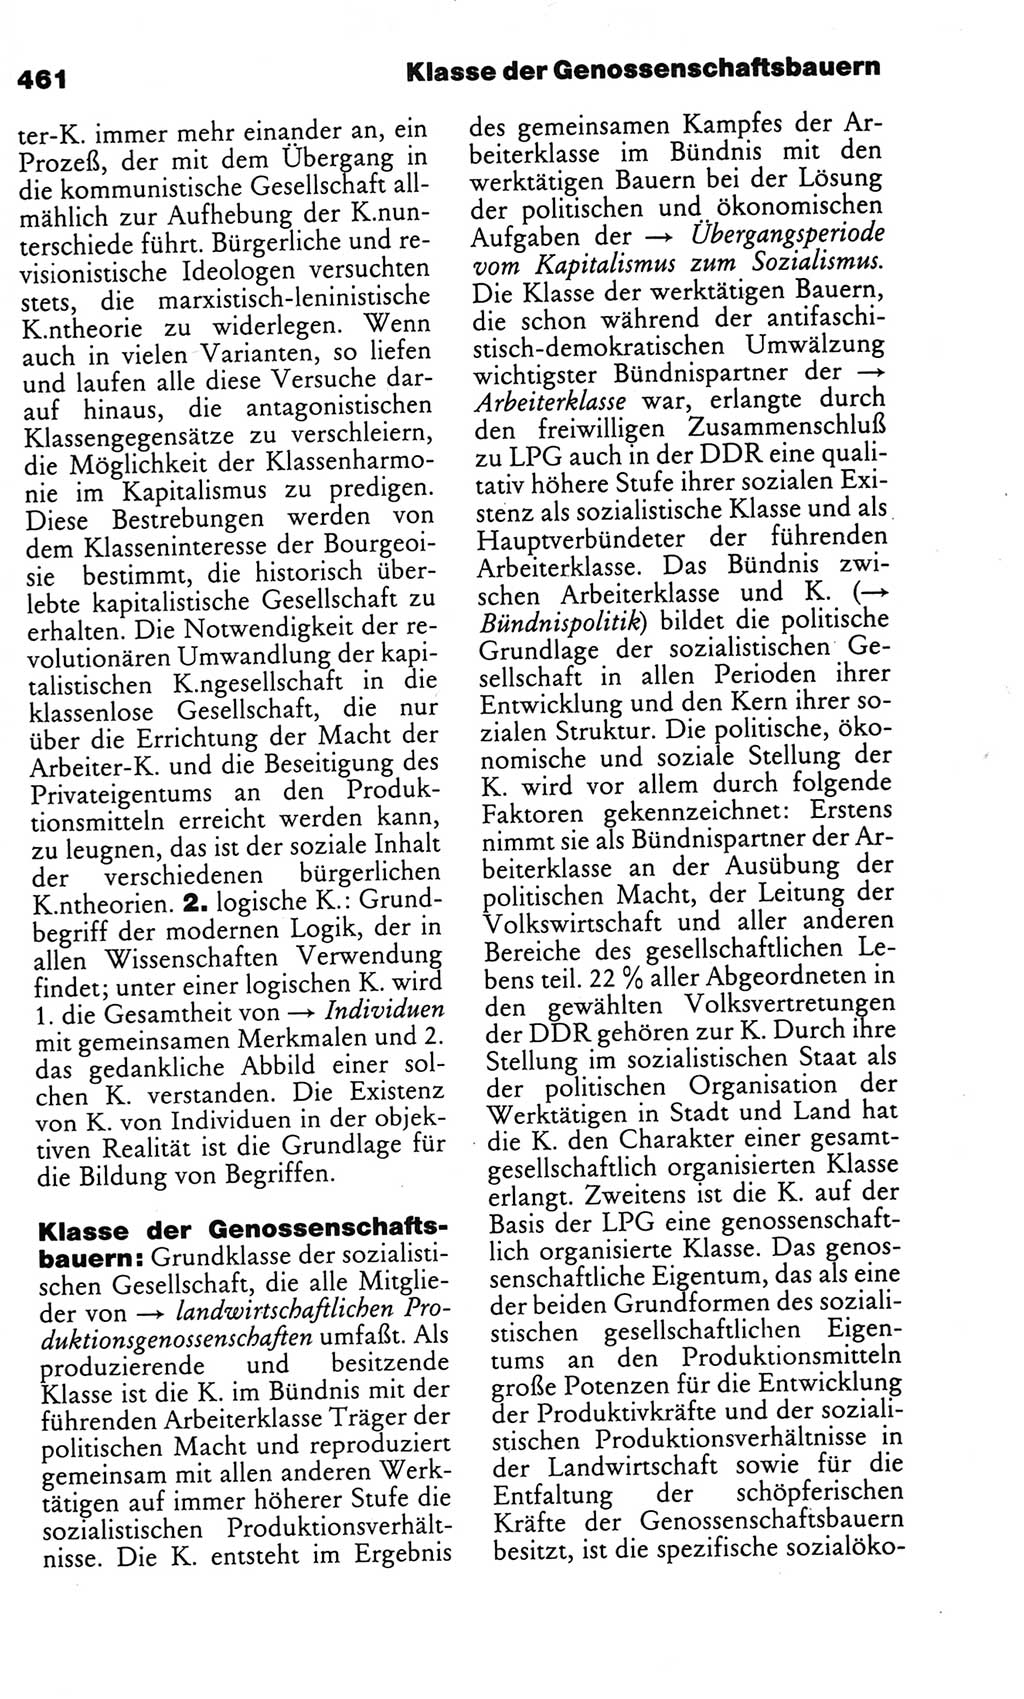 Kleines politisches Wörterbuch [Deutsche Demokratische Republik (DDR)] 1986, Seite 461 (Kl. pol. Wb. DDR 1986, S. 461)